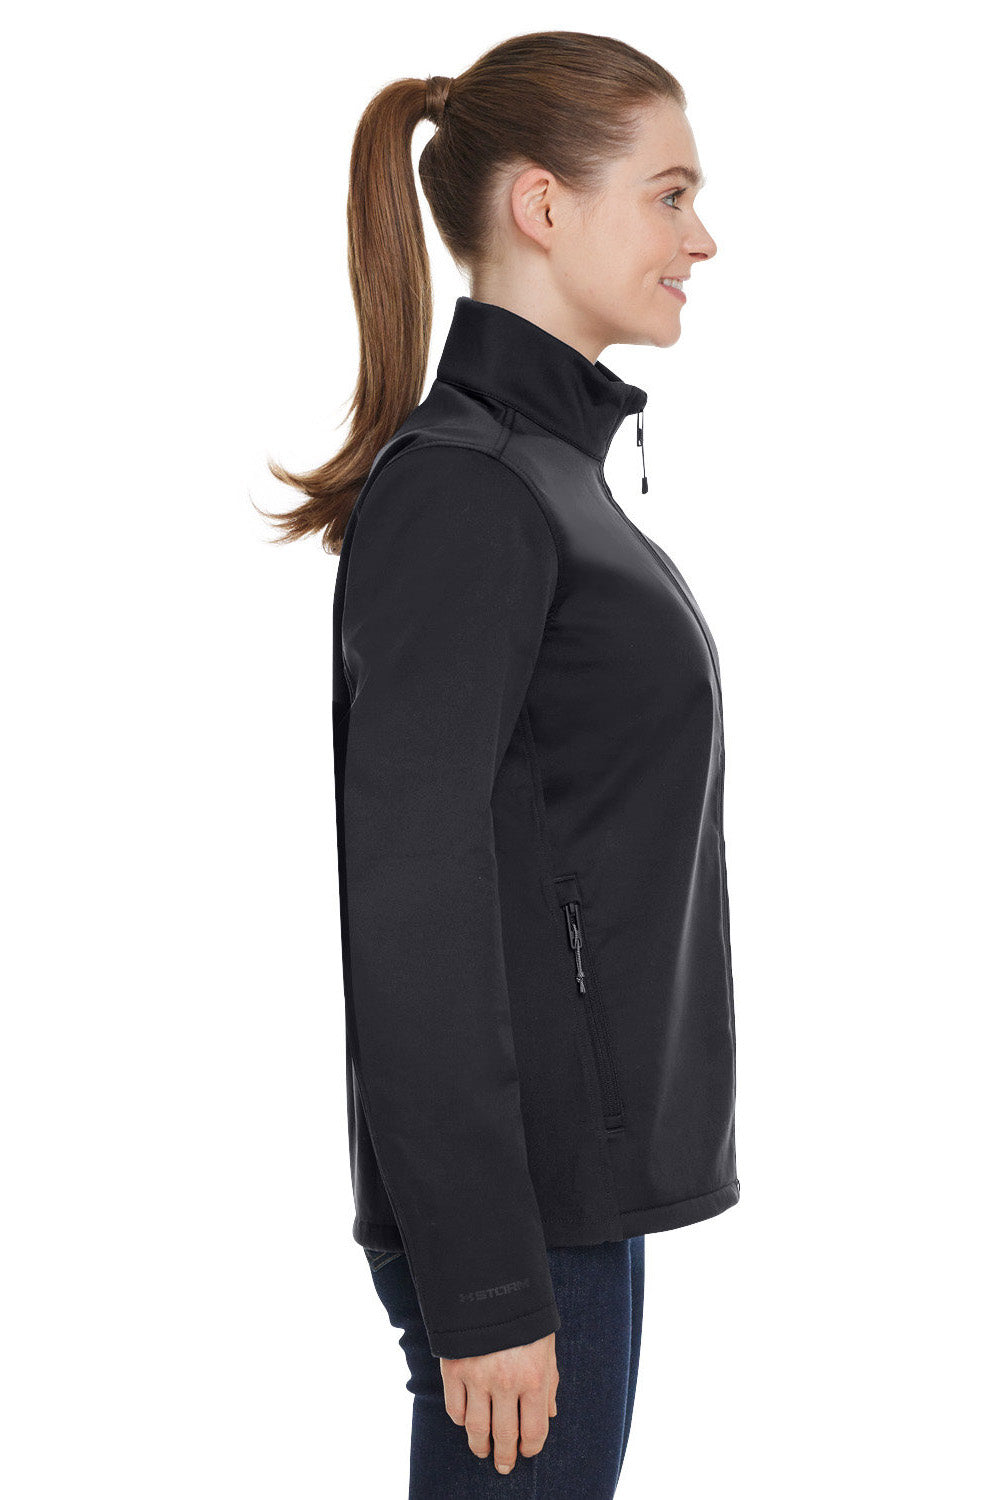 Under Armour 1371594 Womens ColdGear Infrared Shield 2.0 Windproof & Waterproof Full Zip Jacket Black Model Side